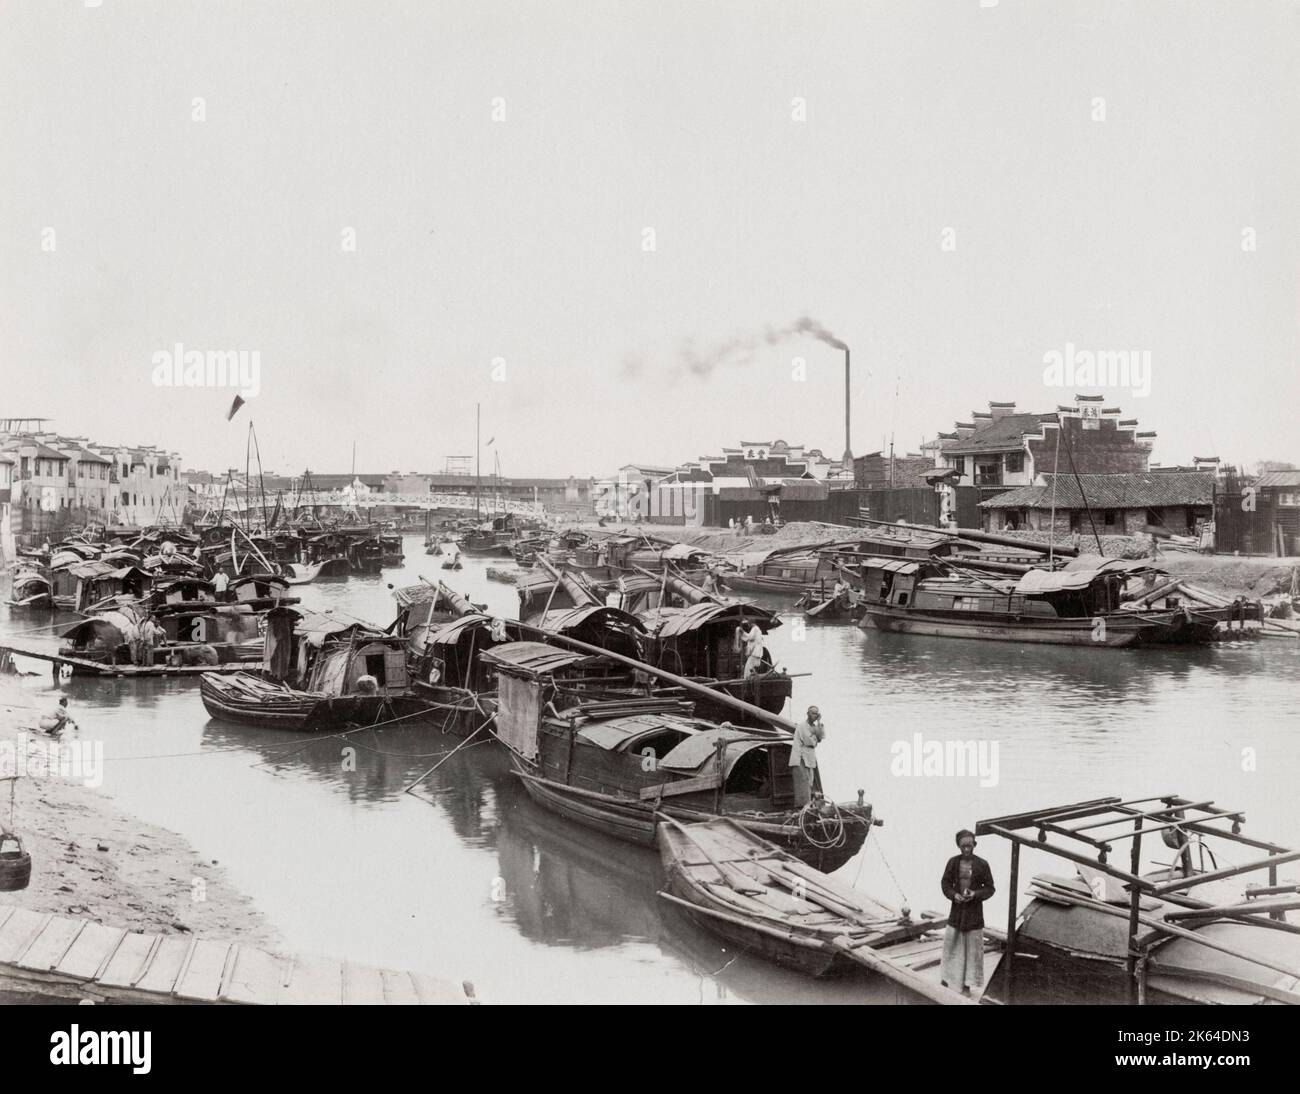 19th Jahrhundert Vintage-Foto: Fluss voller kleiner Boote, Fabrikschornstein im Hintergrund, geschäftige Stadtszene, Asien. Stockfoto